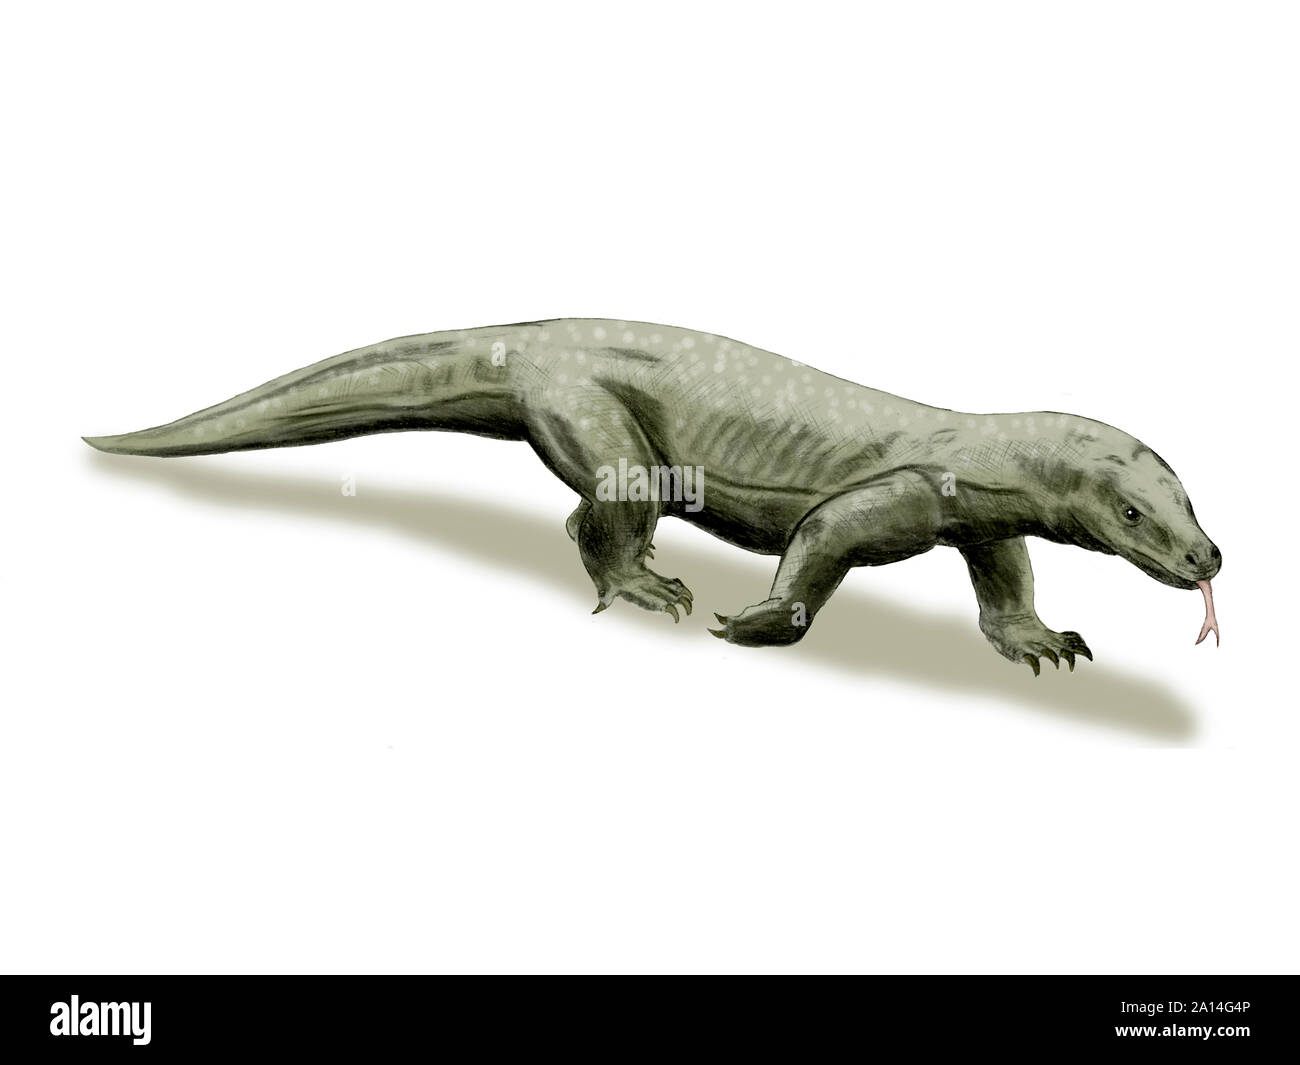 Megalania prisca, giant lizard, Pleistocene of Australia. Stock Photo